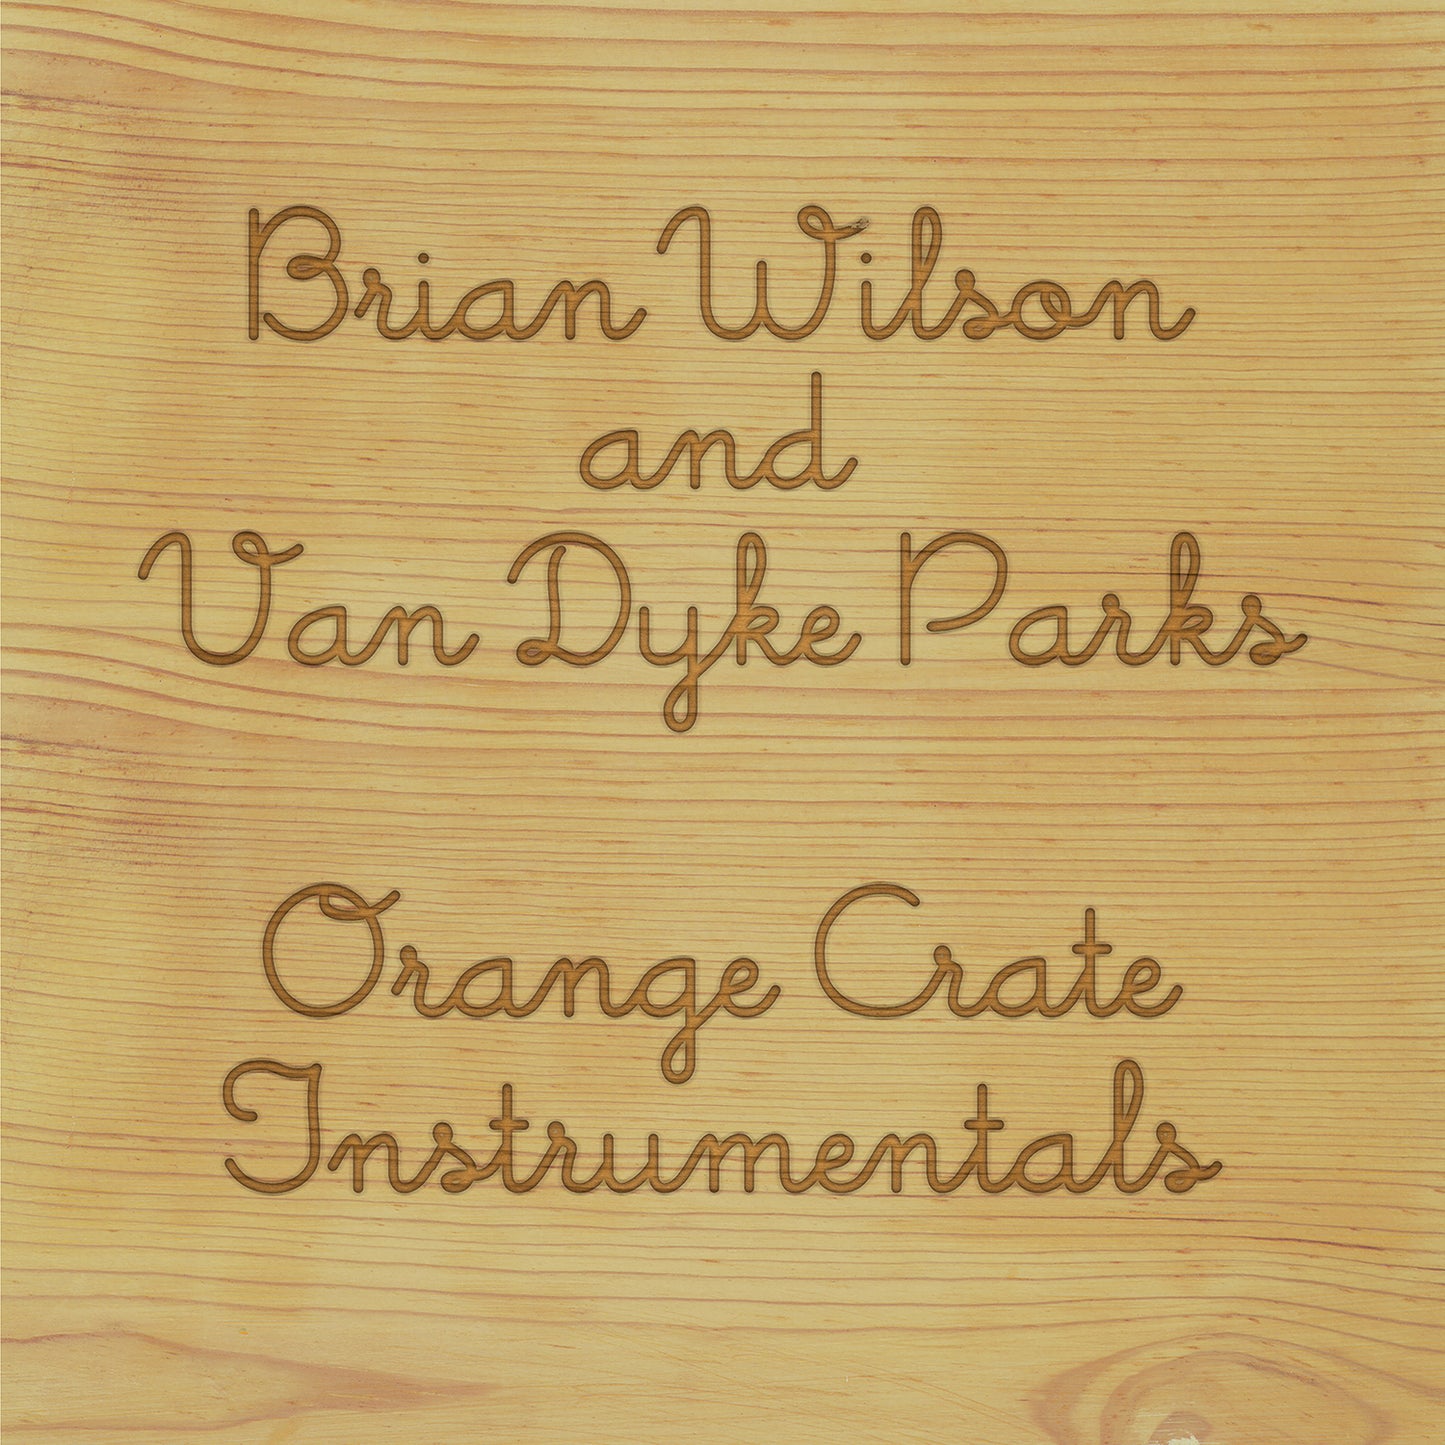 Wilson, Brian & Van Dyke Parks - Orange Crate Instrumentals